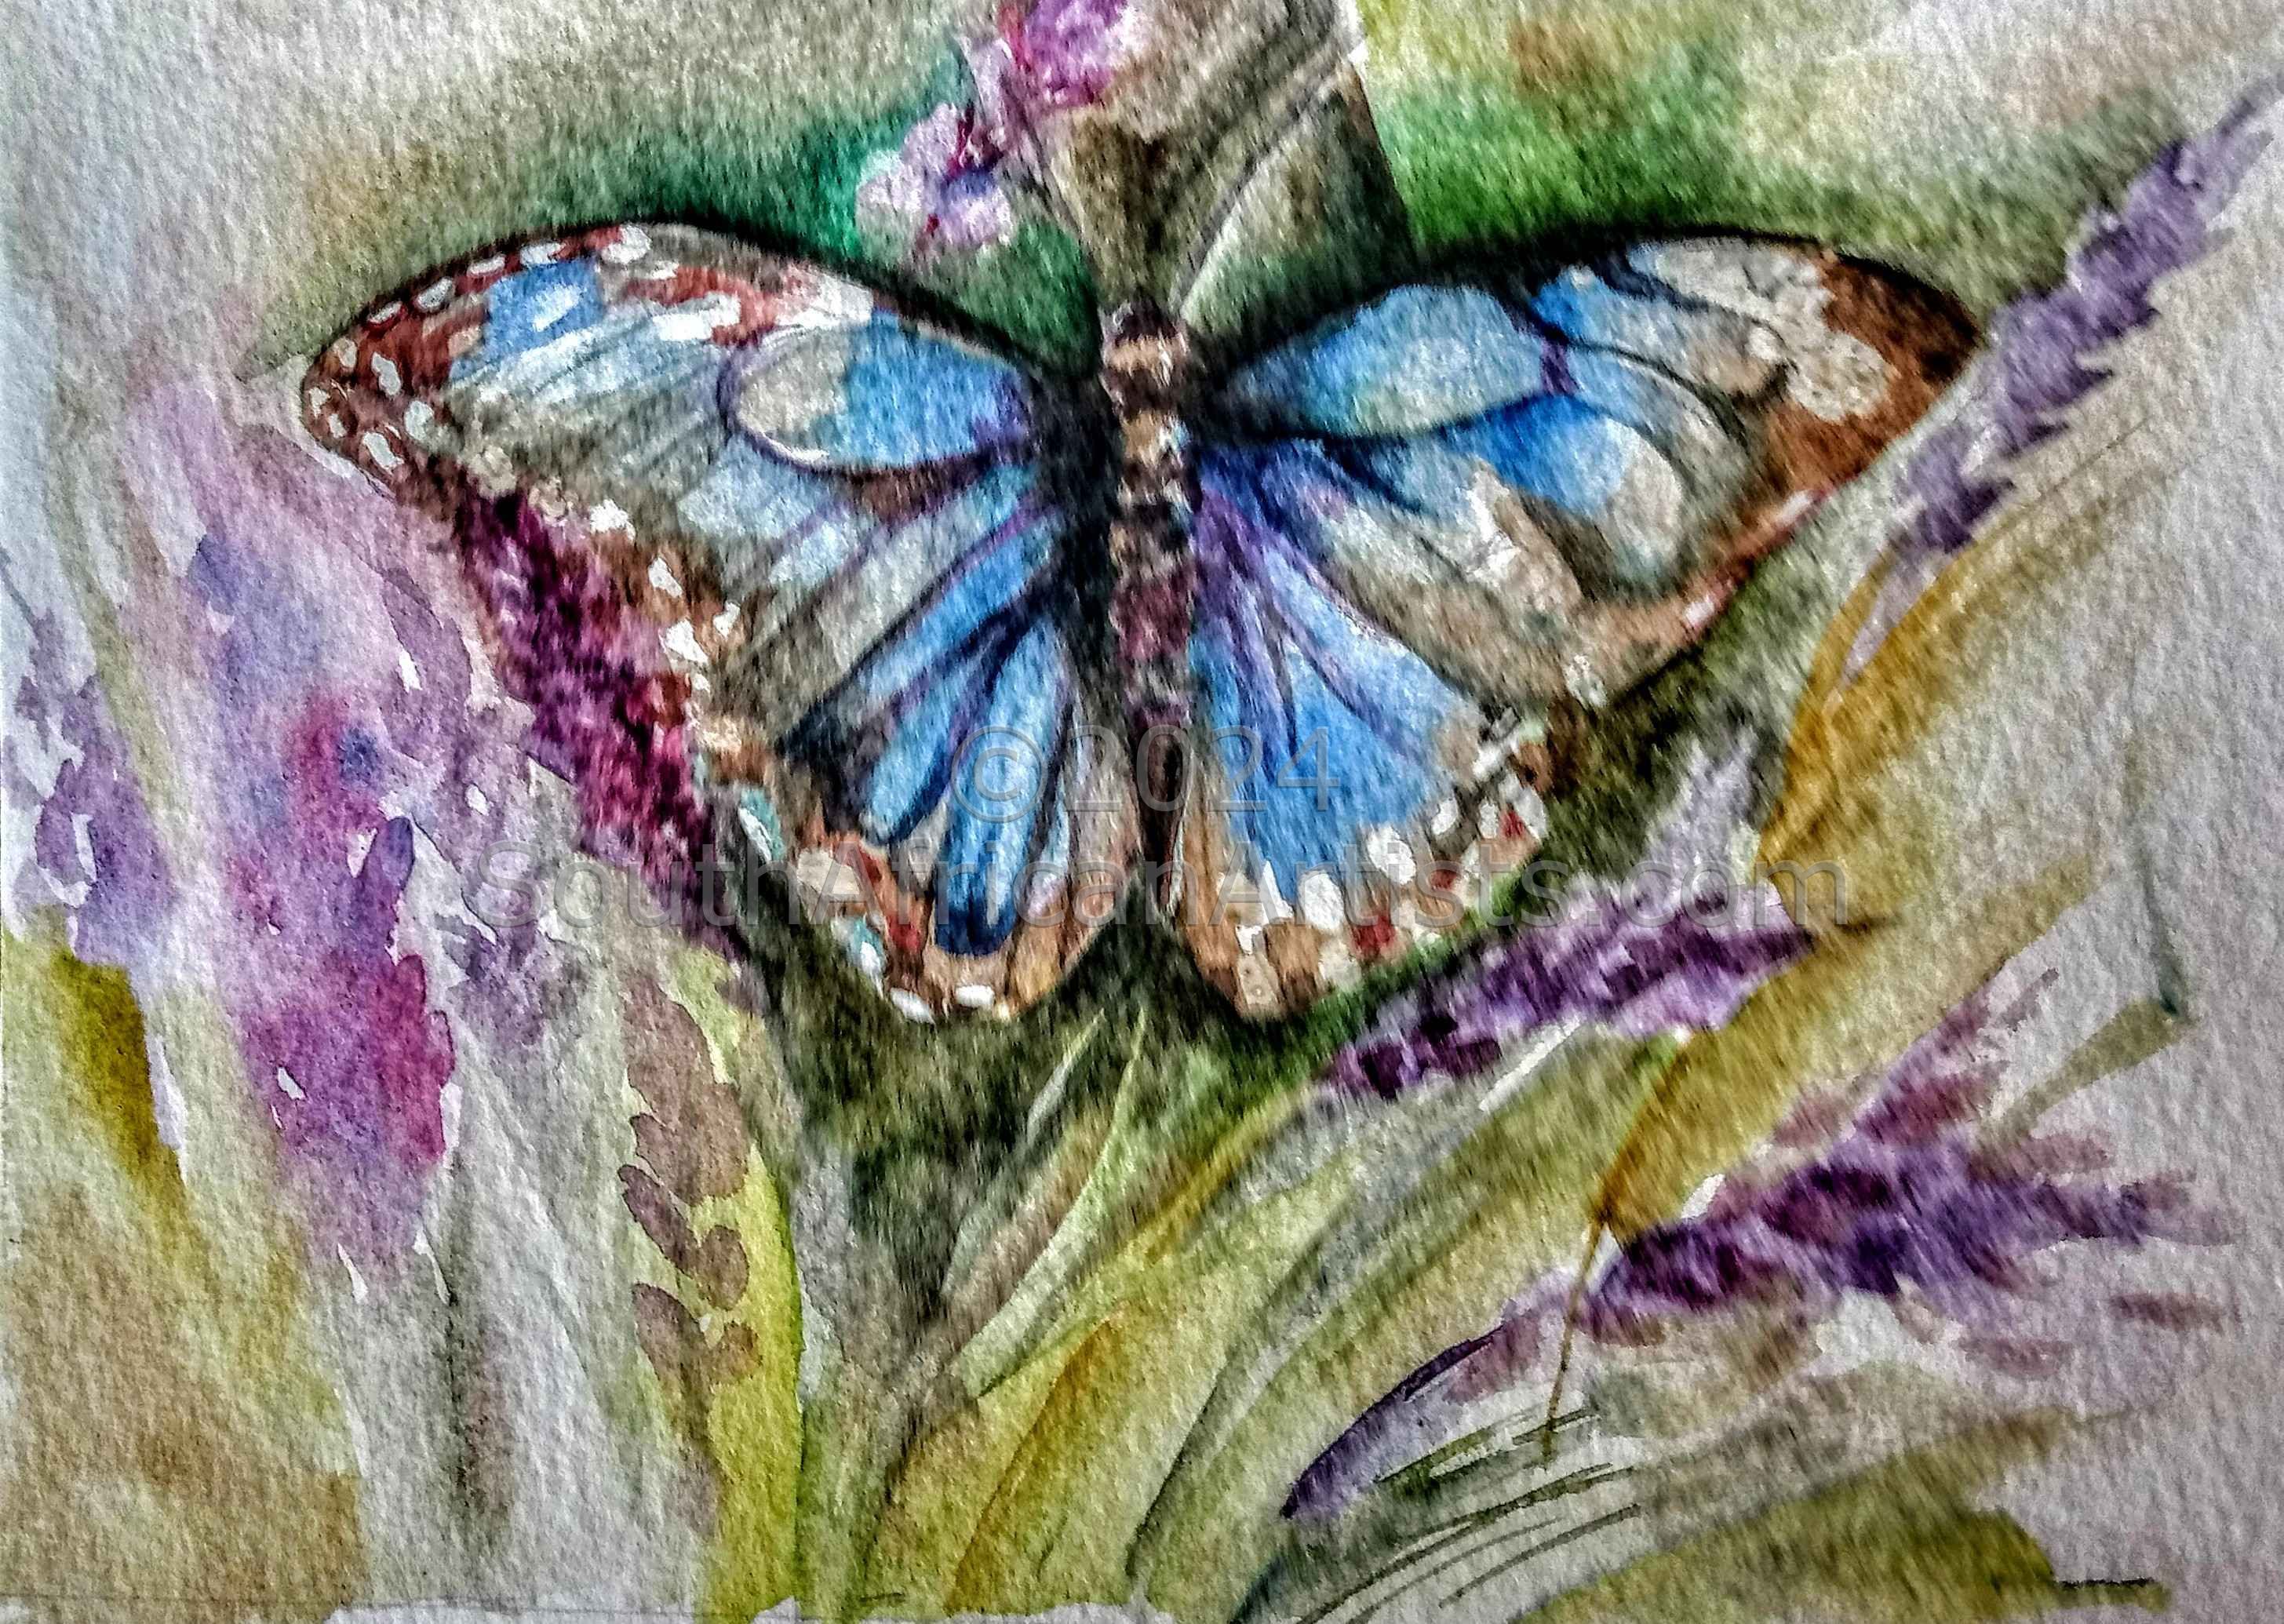 Brenton Blue butterfly